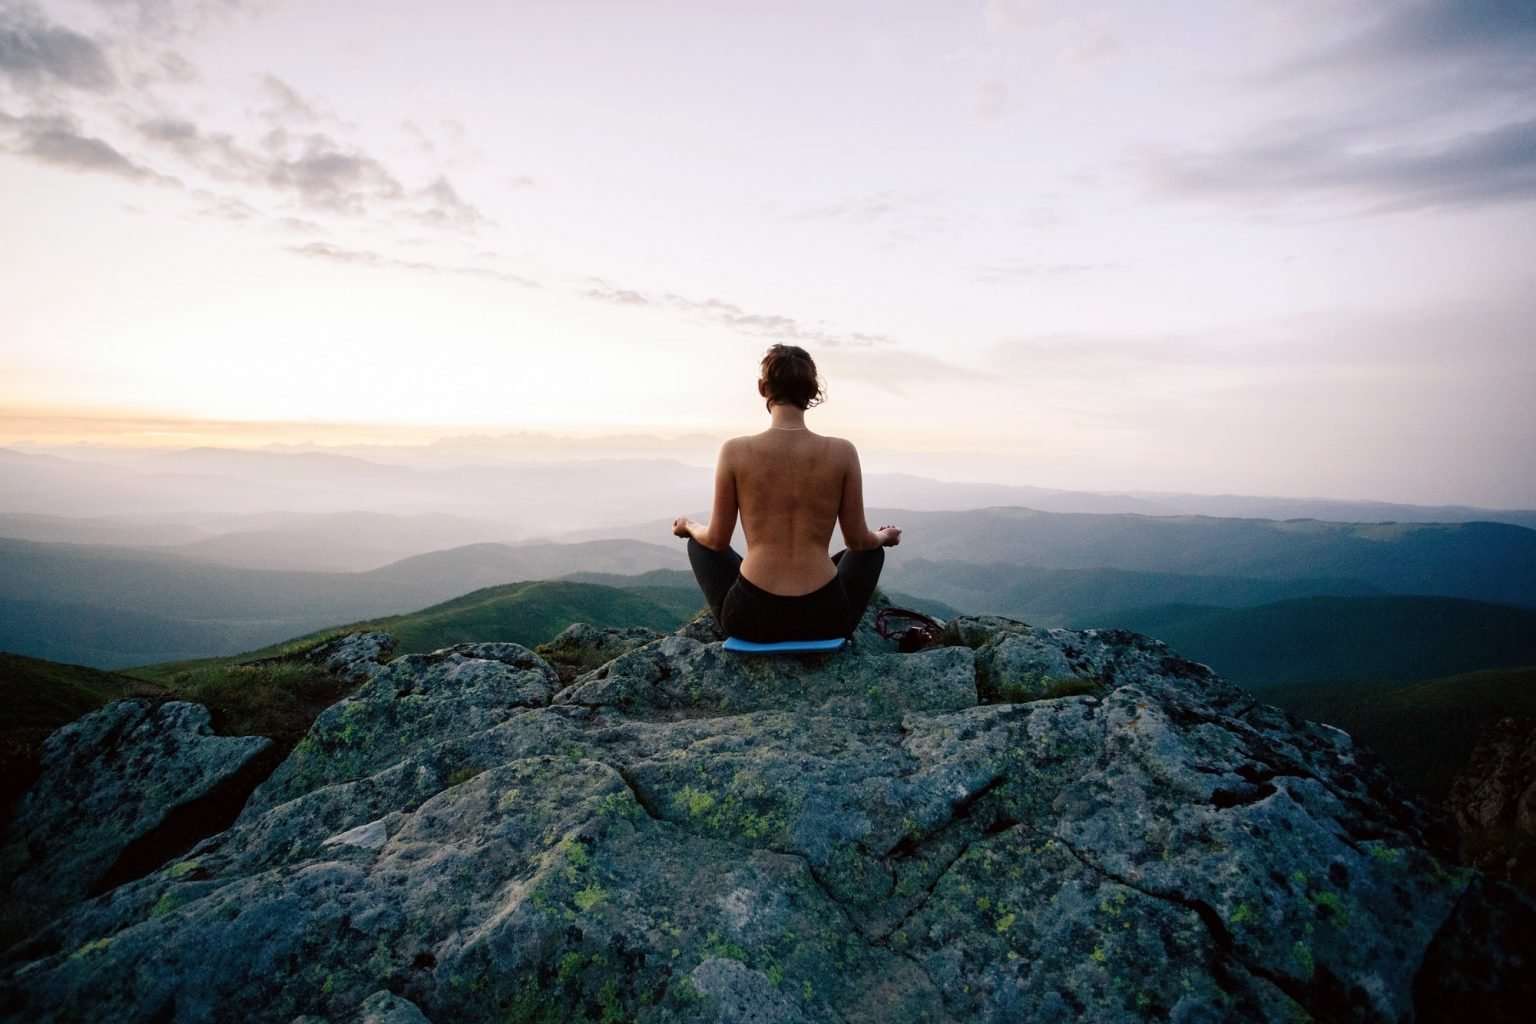 Медитация илая. Медитация в горах. Медитация на скале. Парень медитирует на природе. Девушка медитирует на скале.